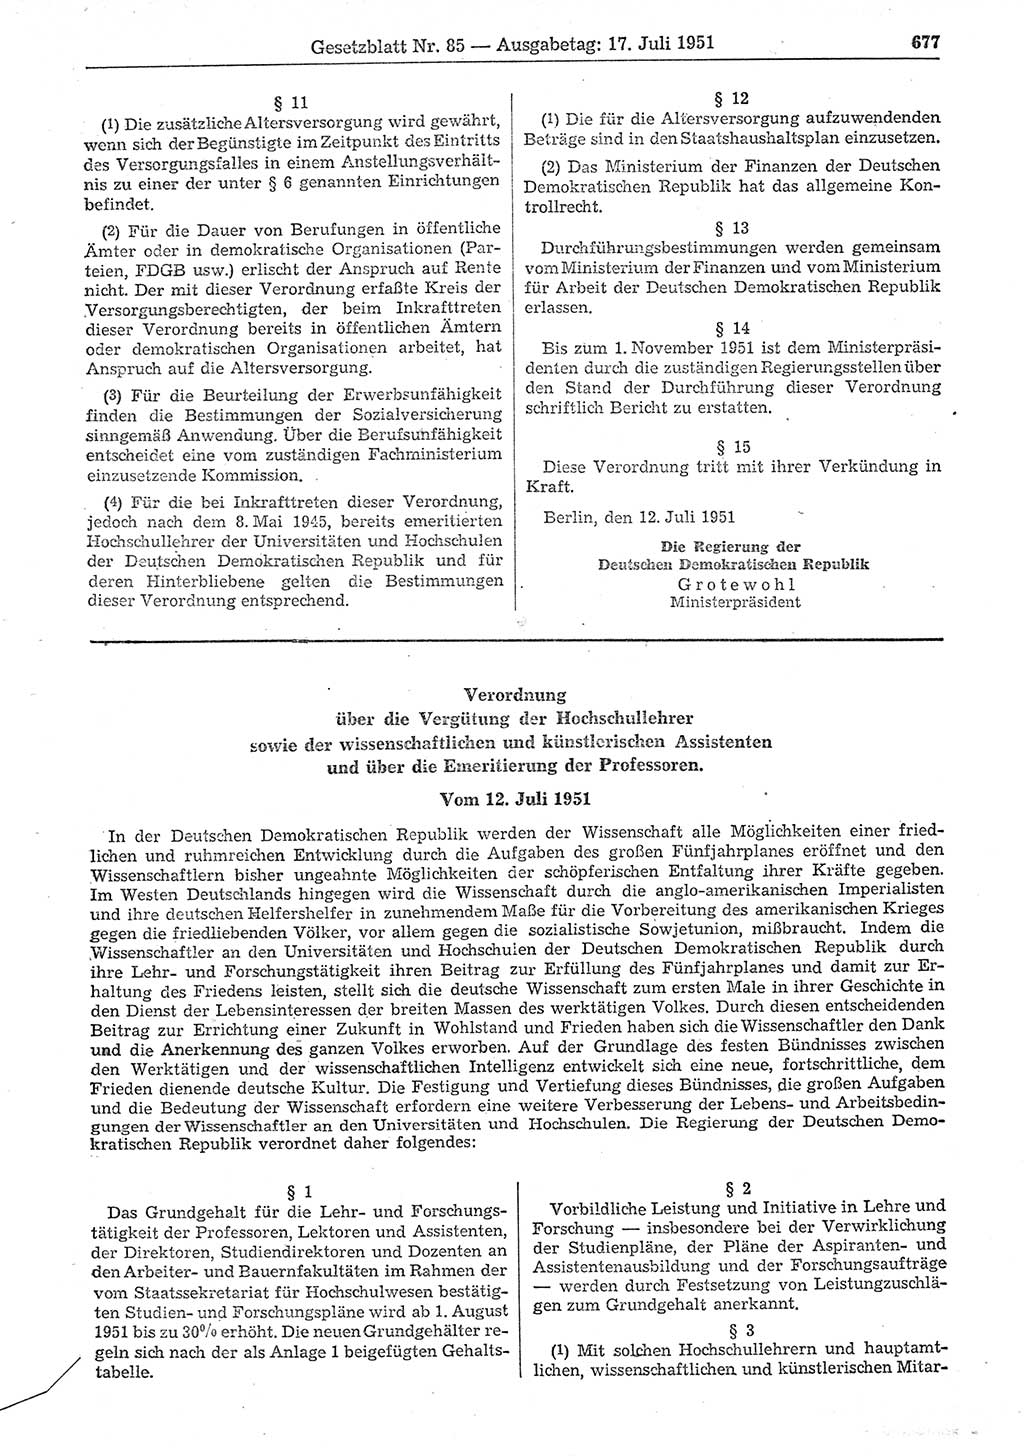 Gesetzblatt (GBl.) der Deutschen Demokratischen Republik (DDR) 1951, Seite 677 (GBl. DDR 1951, S. 677)